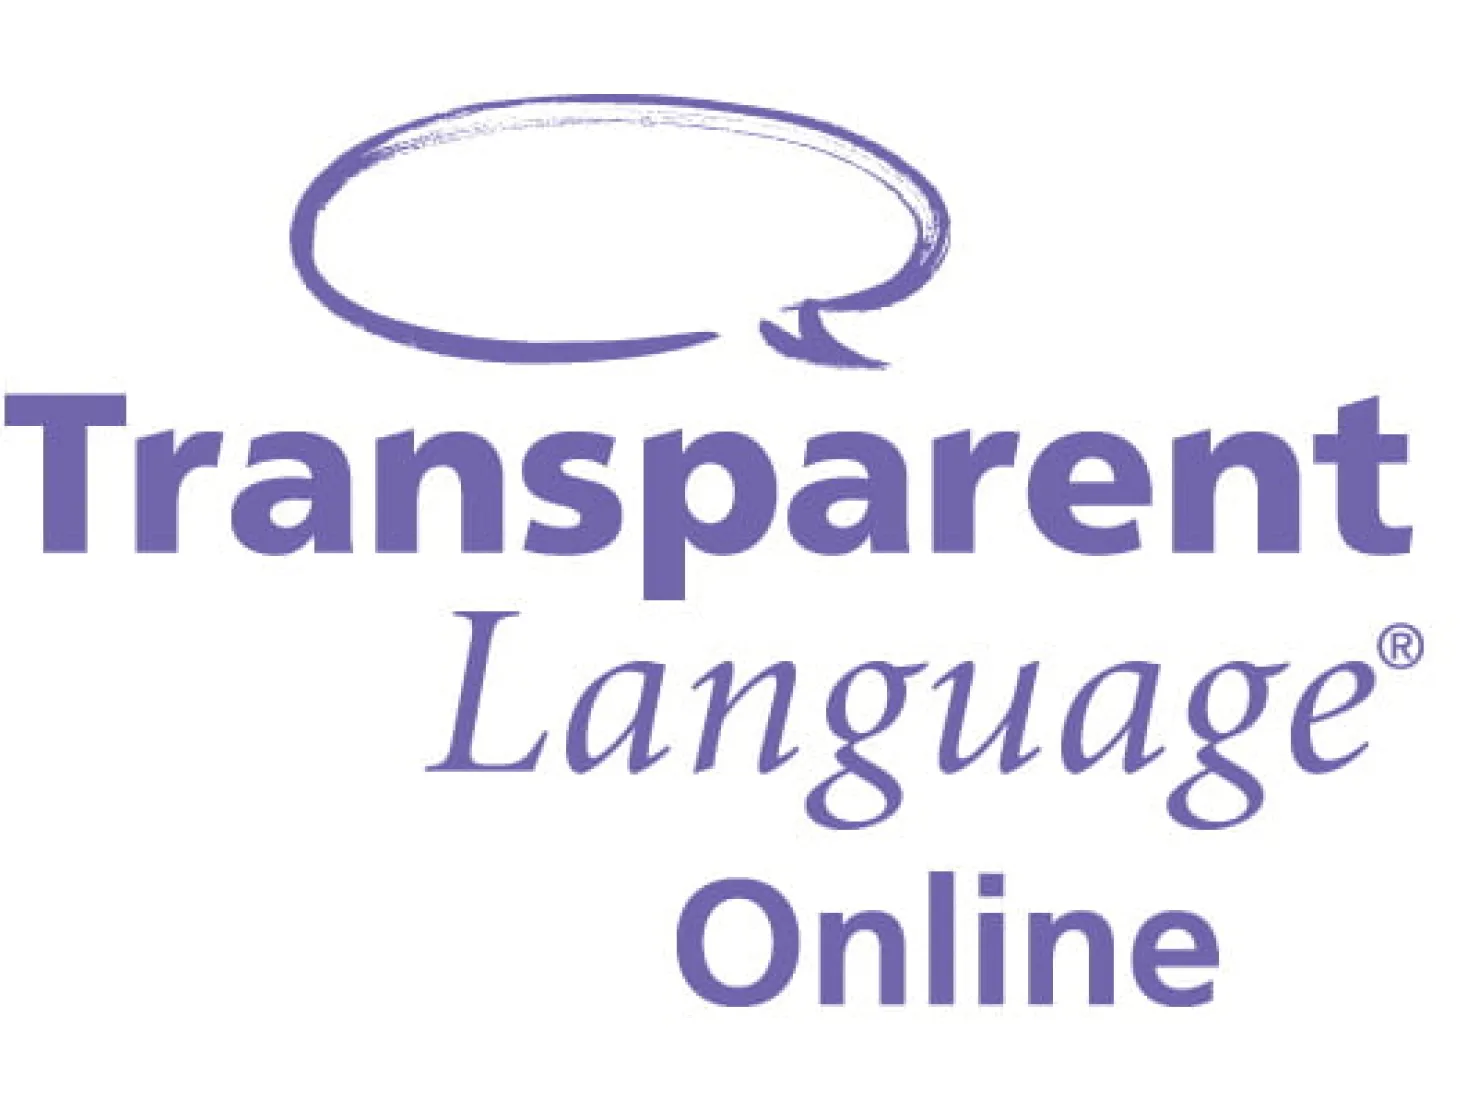 Transparent language